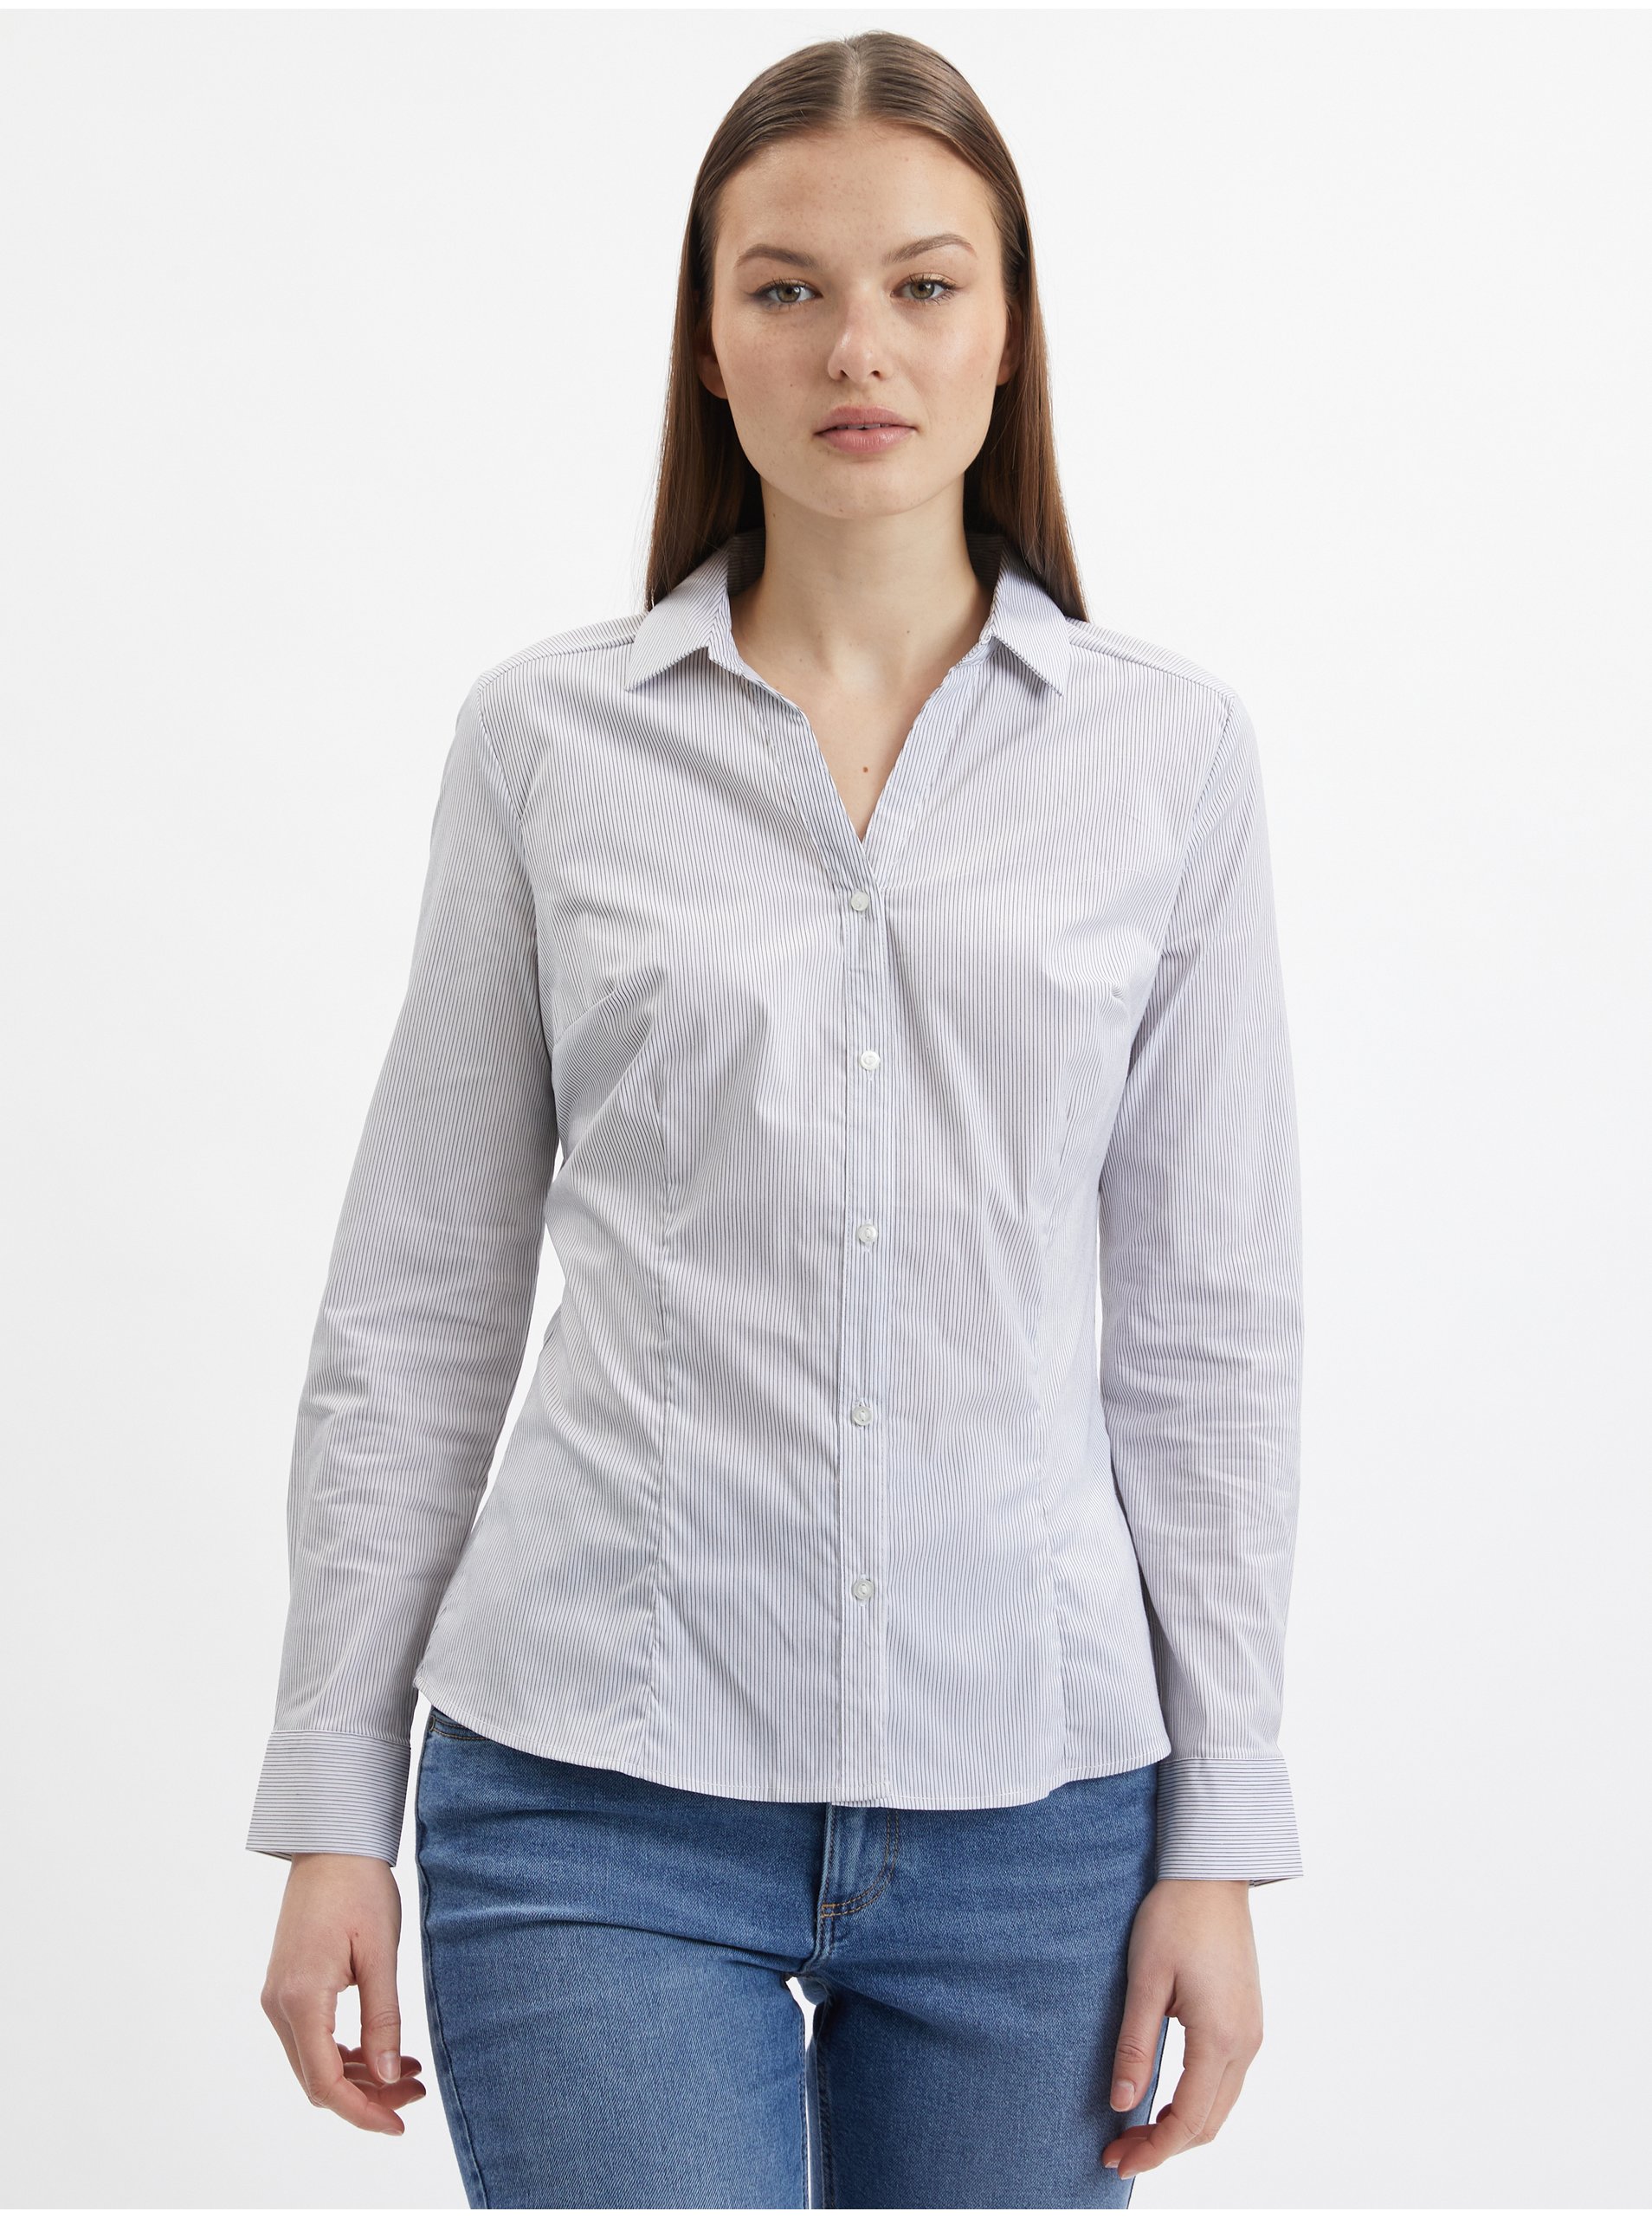 Lacno Modro-biela dámska pruhovaná košeľa ORSAY